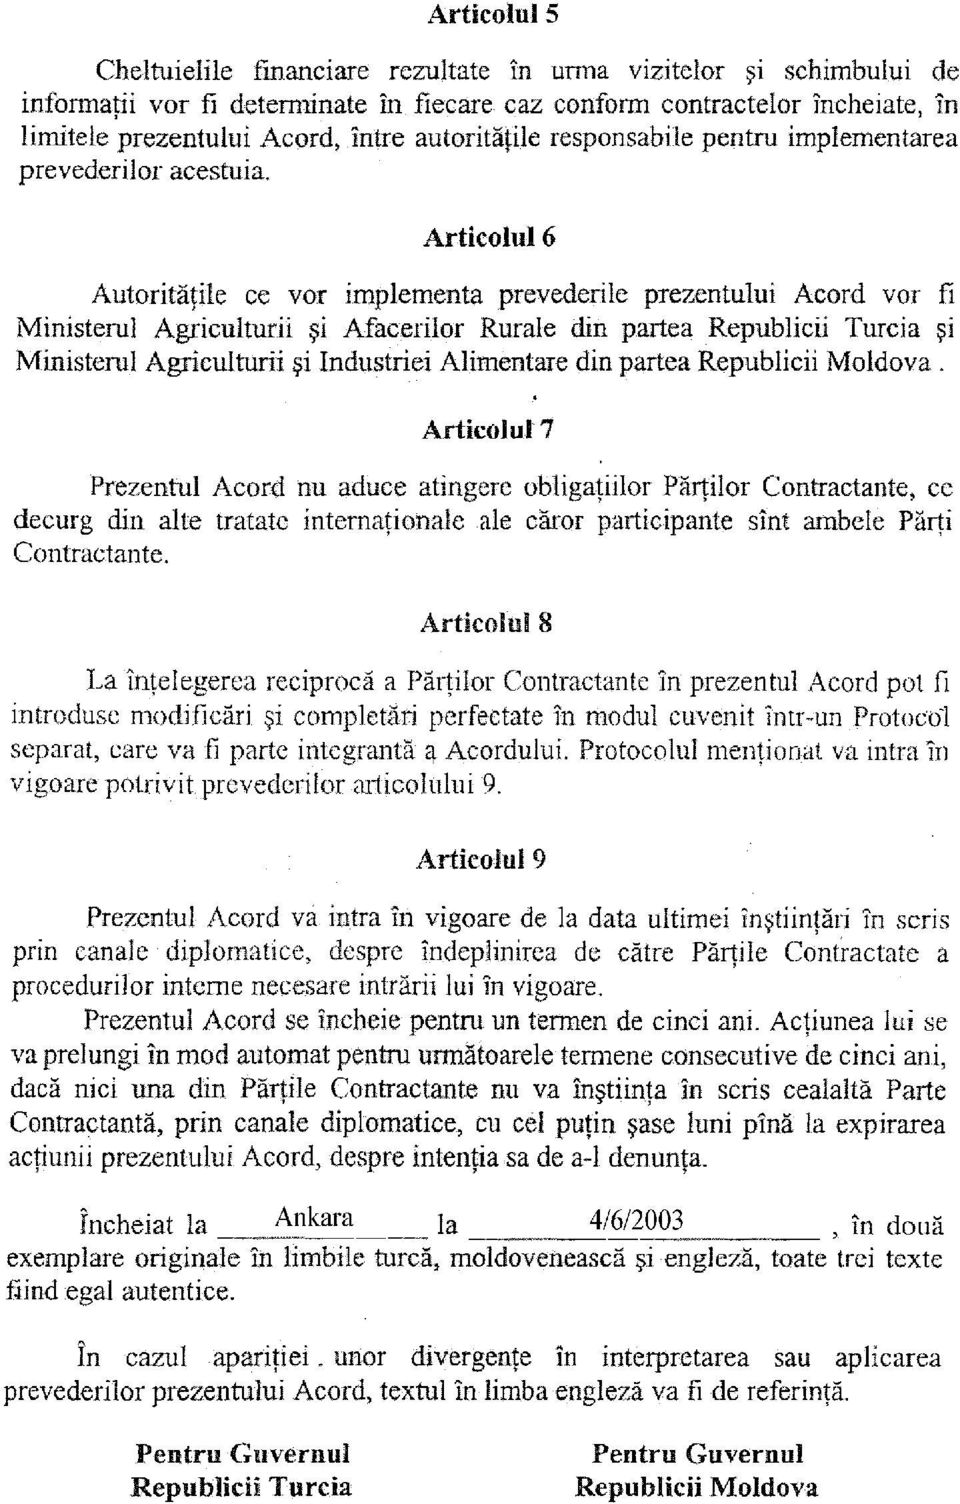 Articolul6 Autoritatile ce vor implementa prevederile prezentului Acord vor fi Ministerul Agriculturii si Afacerilor Rurale din partea Republicii Turcia ~i Ministerul Agriculturii si Industriei